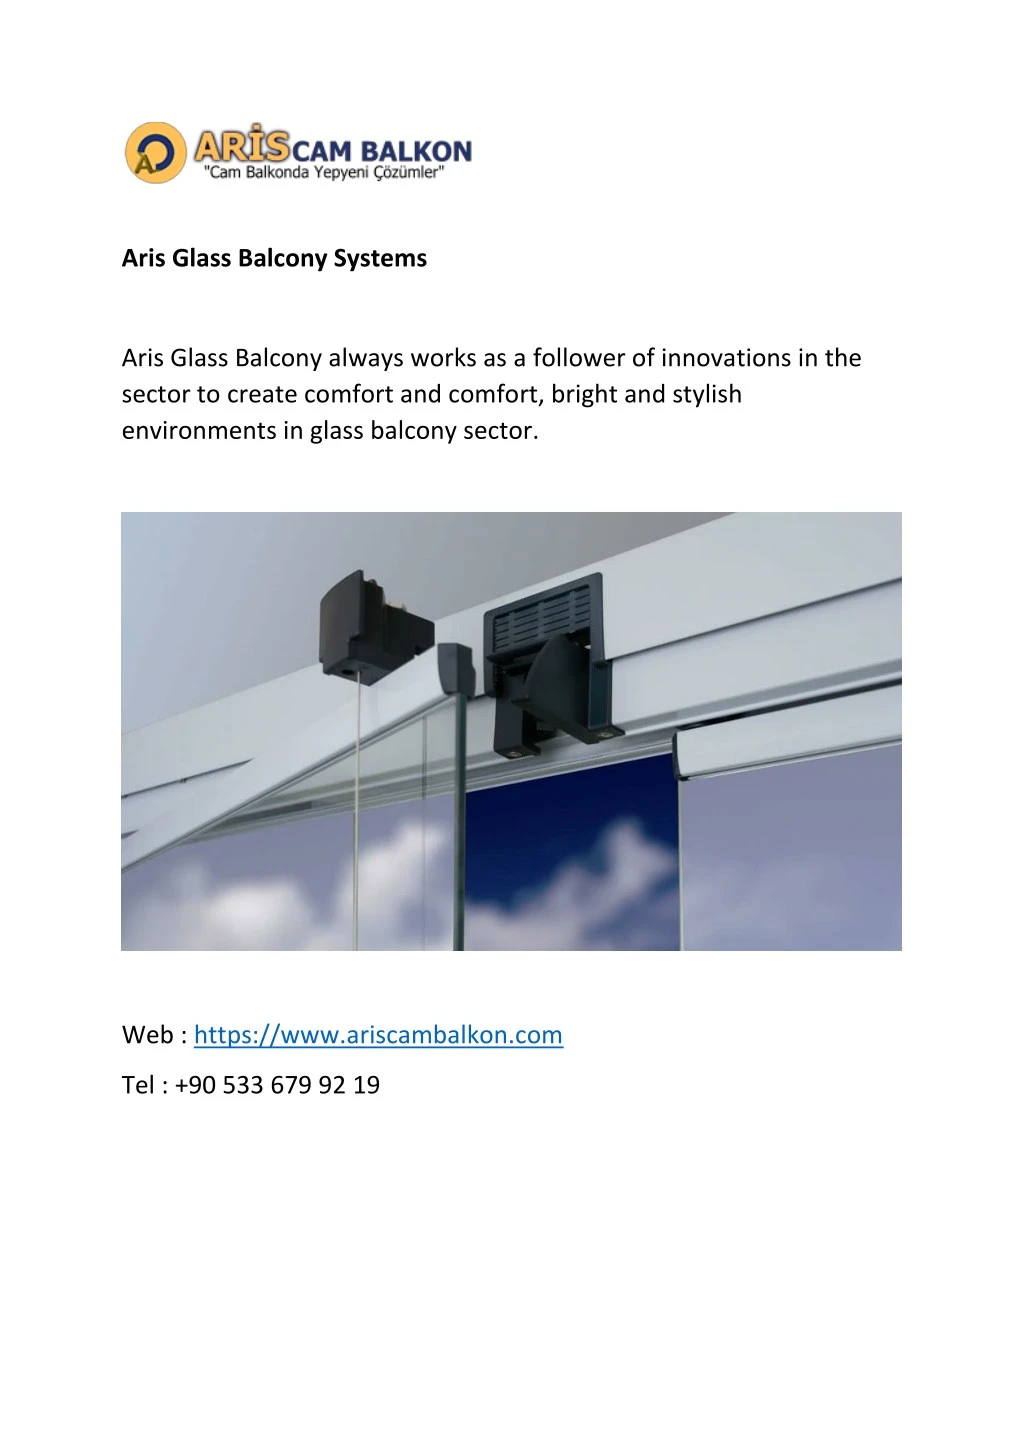 aris glass balcony systems